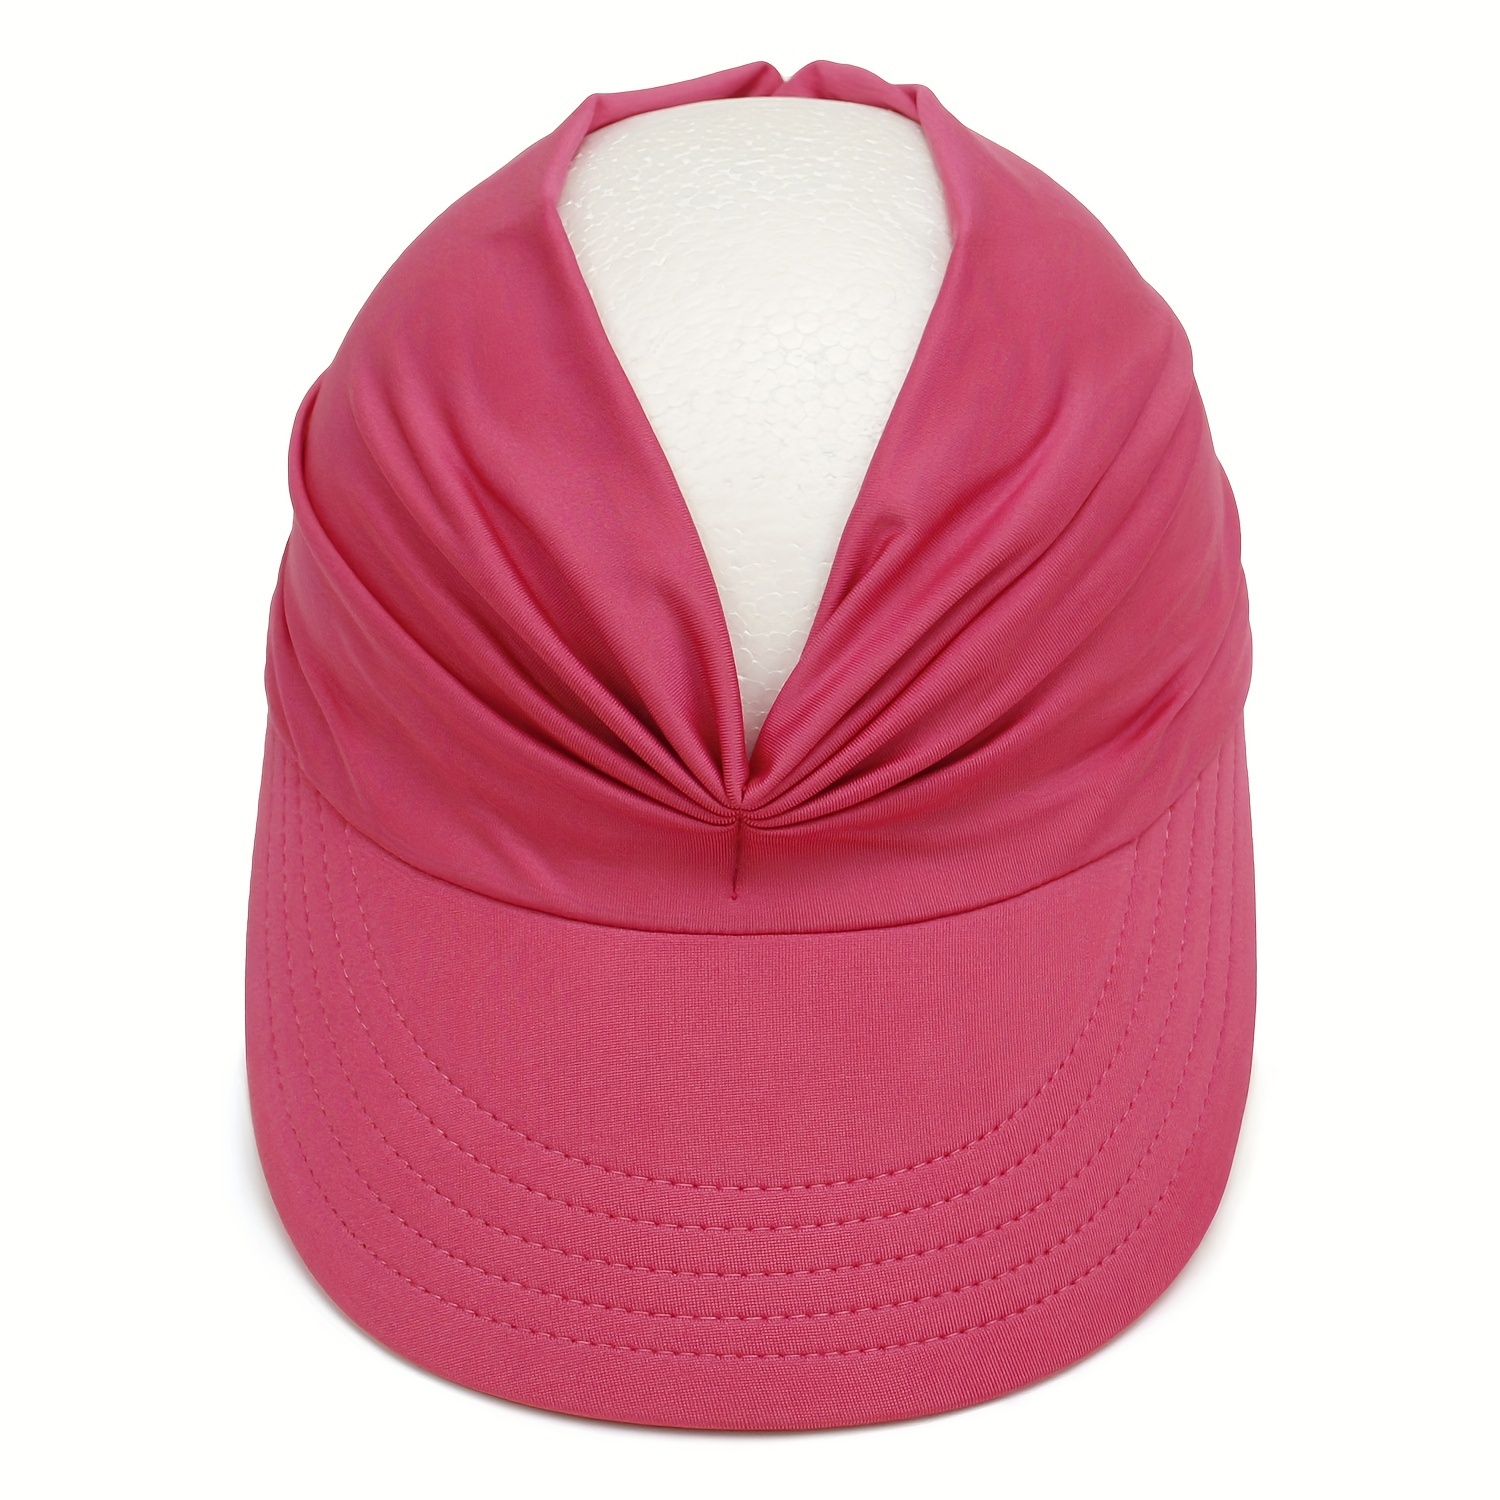  WPYYI - Sombrero de sol para mujer, gorra de sol transpirable  para mujer, visera escalable, parte superior vacía, gorra de béisbol de ala  ancha, gorra de playa (color A, tamaño: 21.7-22.8